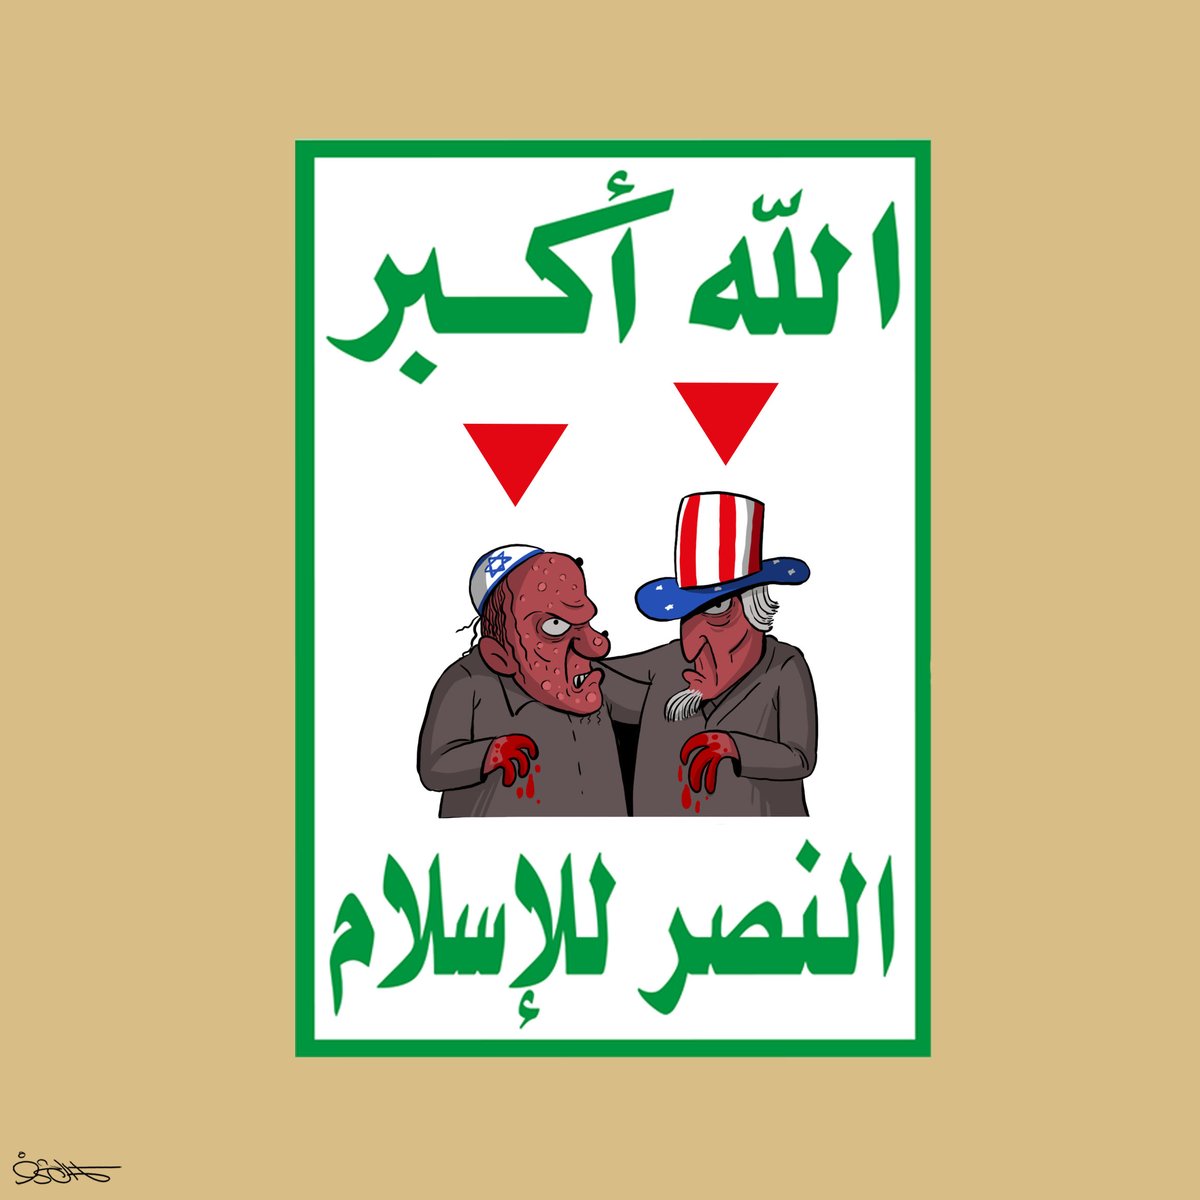 ((معركة الوعي هامة جدا، وترسيخ الفهم لحقيقة وأبعاد الصراع مسألة في غاية الأهمية، الاهتمام بالخطوات العملية بترسيخ وتفعيل حالة السخط والعداء ضد إسرائيل وأمريكا))

السيد القائد عبدالملك بدرالدين الحوثي 

#الشعار_سلاح_وموقف 
#اليمن